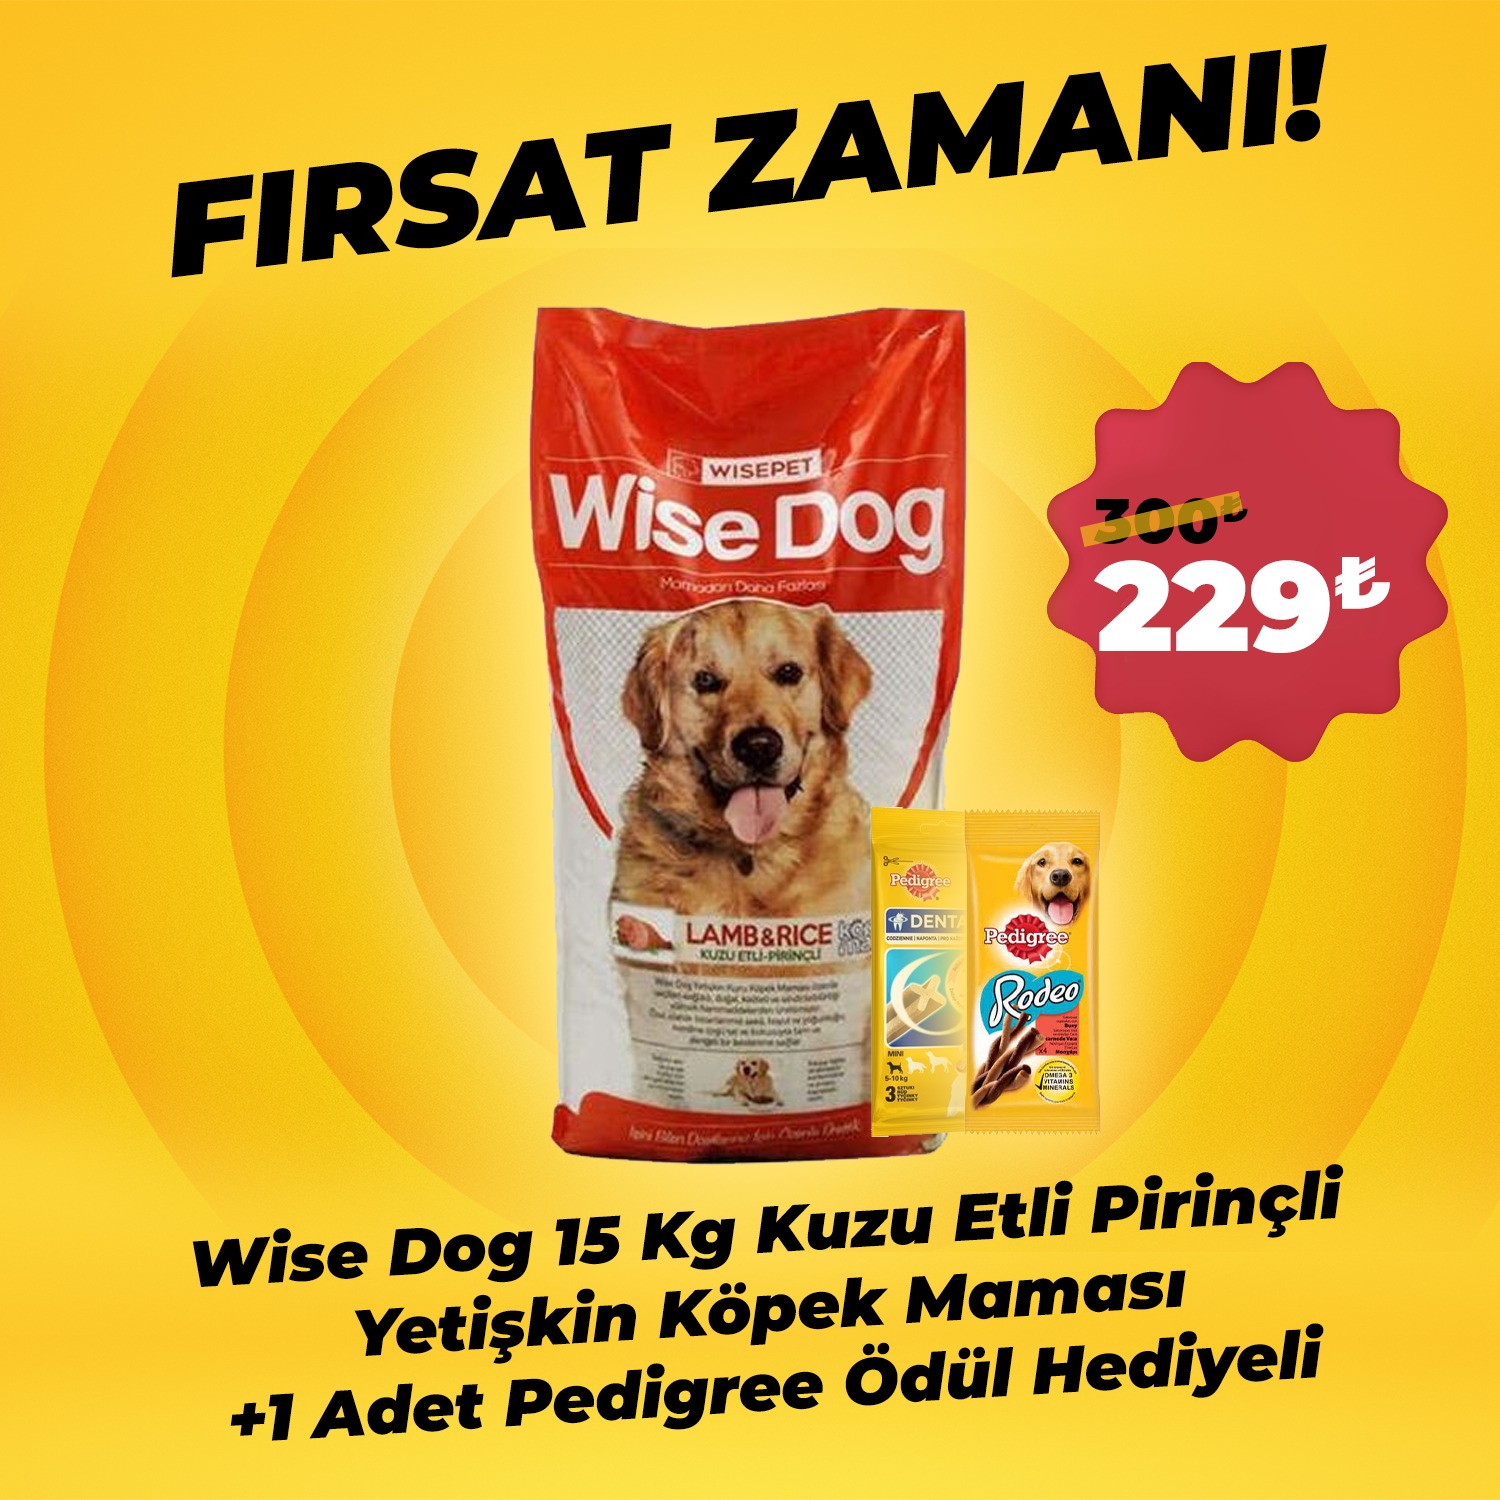 Wise Dog 15 Kg Kuzu Etli Pirinçli Yetişkin Köpek Maması + 1 Adet Pedigree Ödül Hediyeli